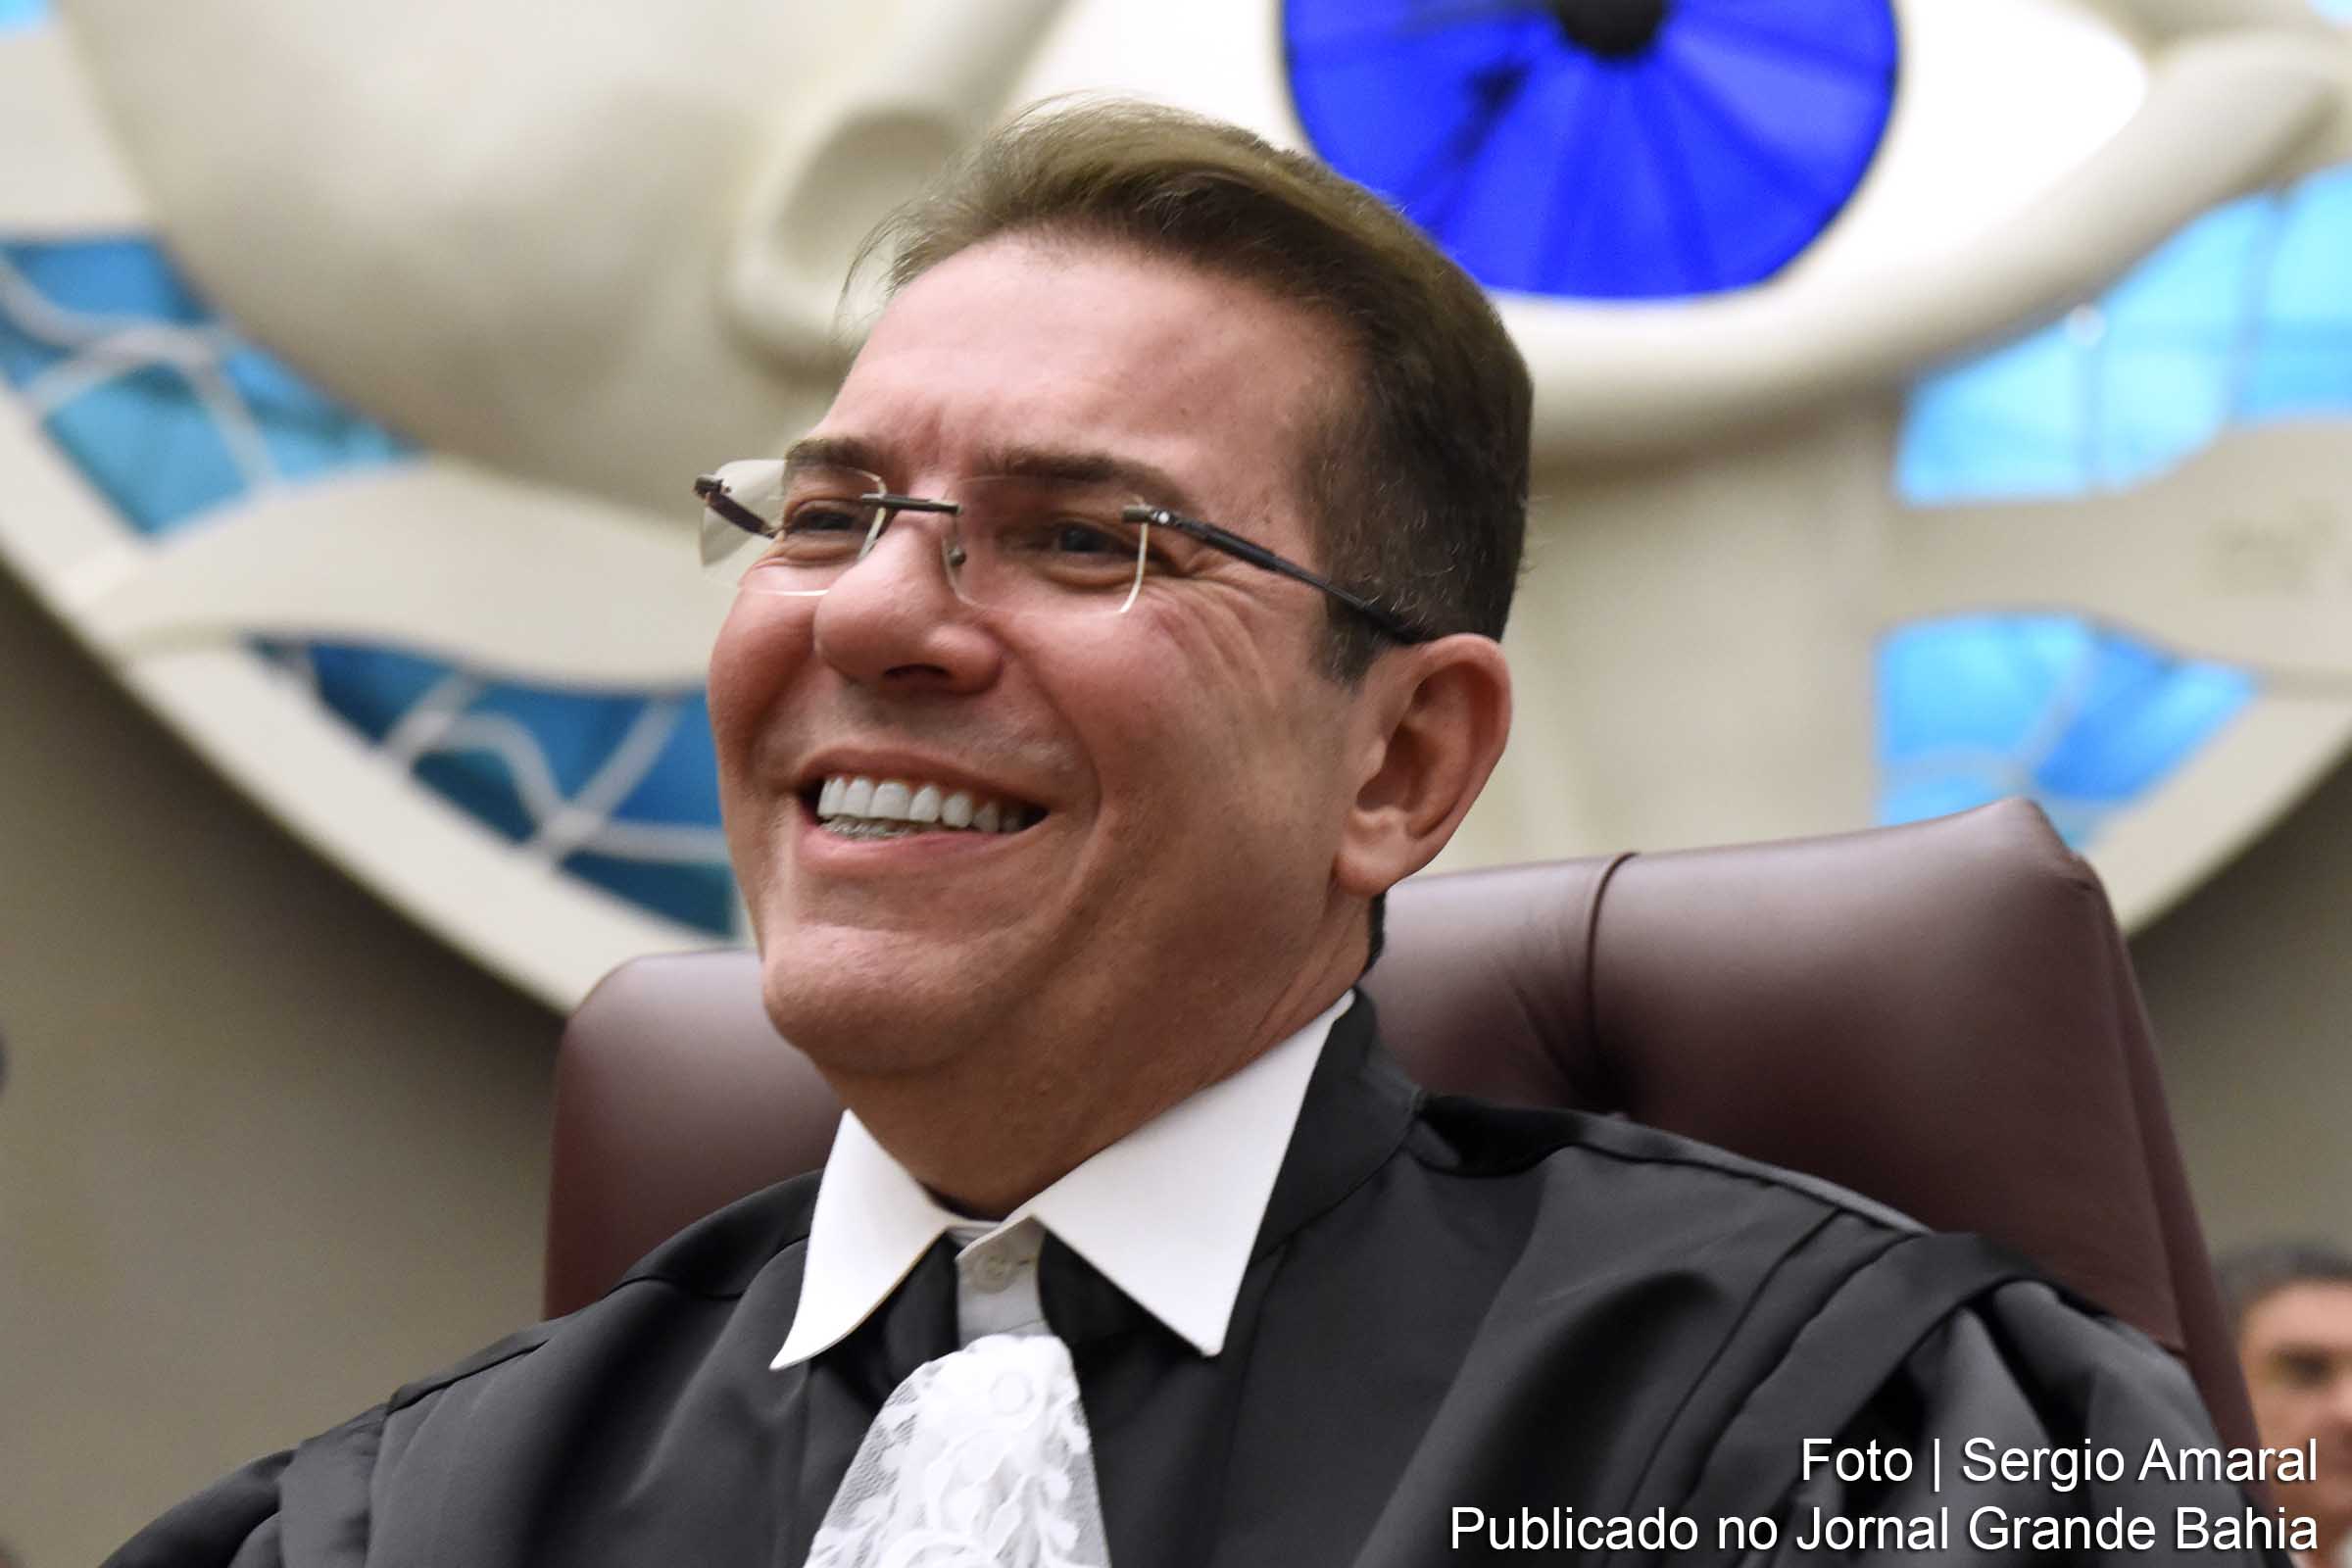 Ministro Marcelo Navarro Ribeiro Dantas nega possível acusação do senador Delcídio do Amaral, sobre conluio para soltar presos do caso Lava Jato.